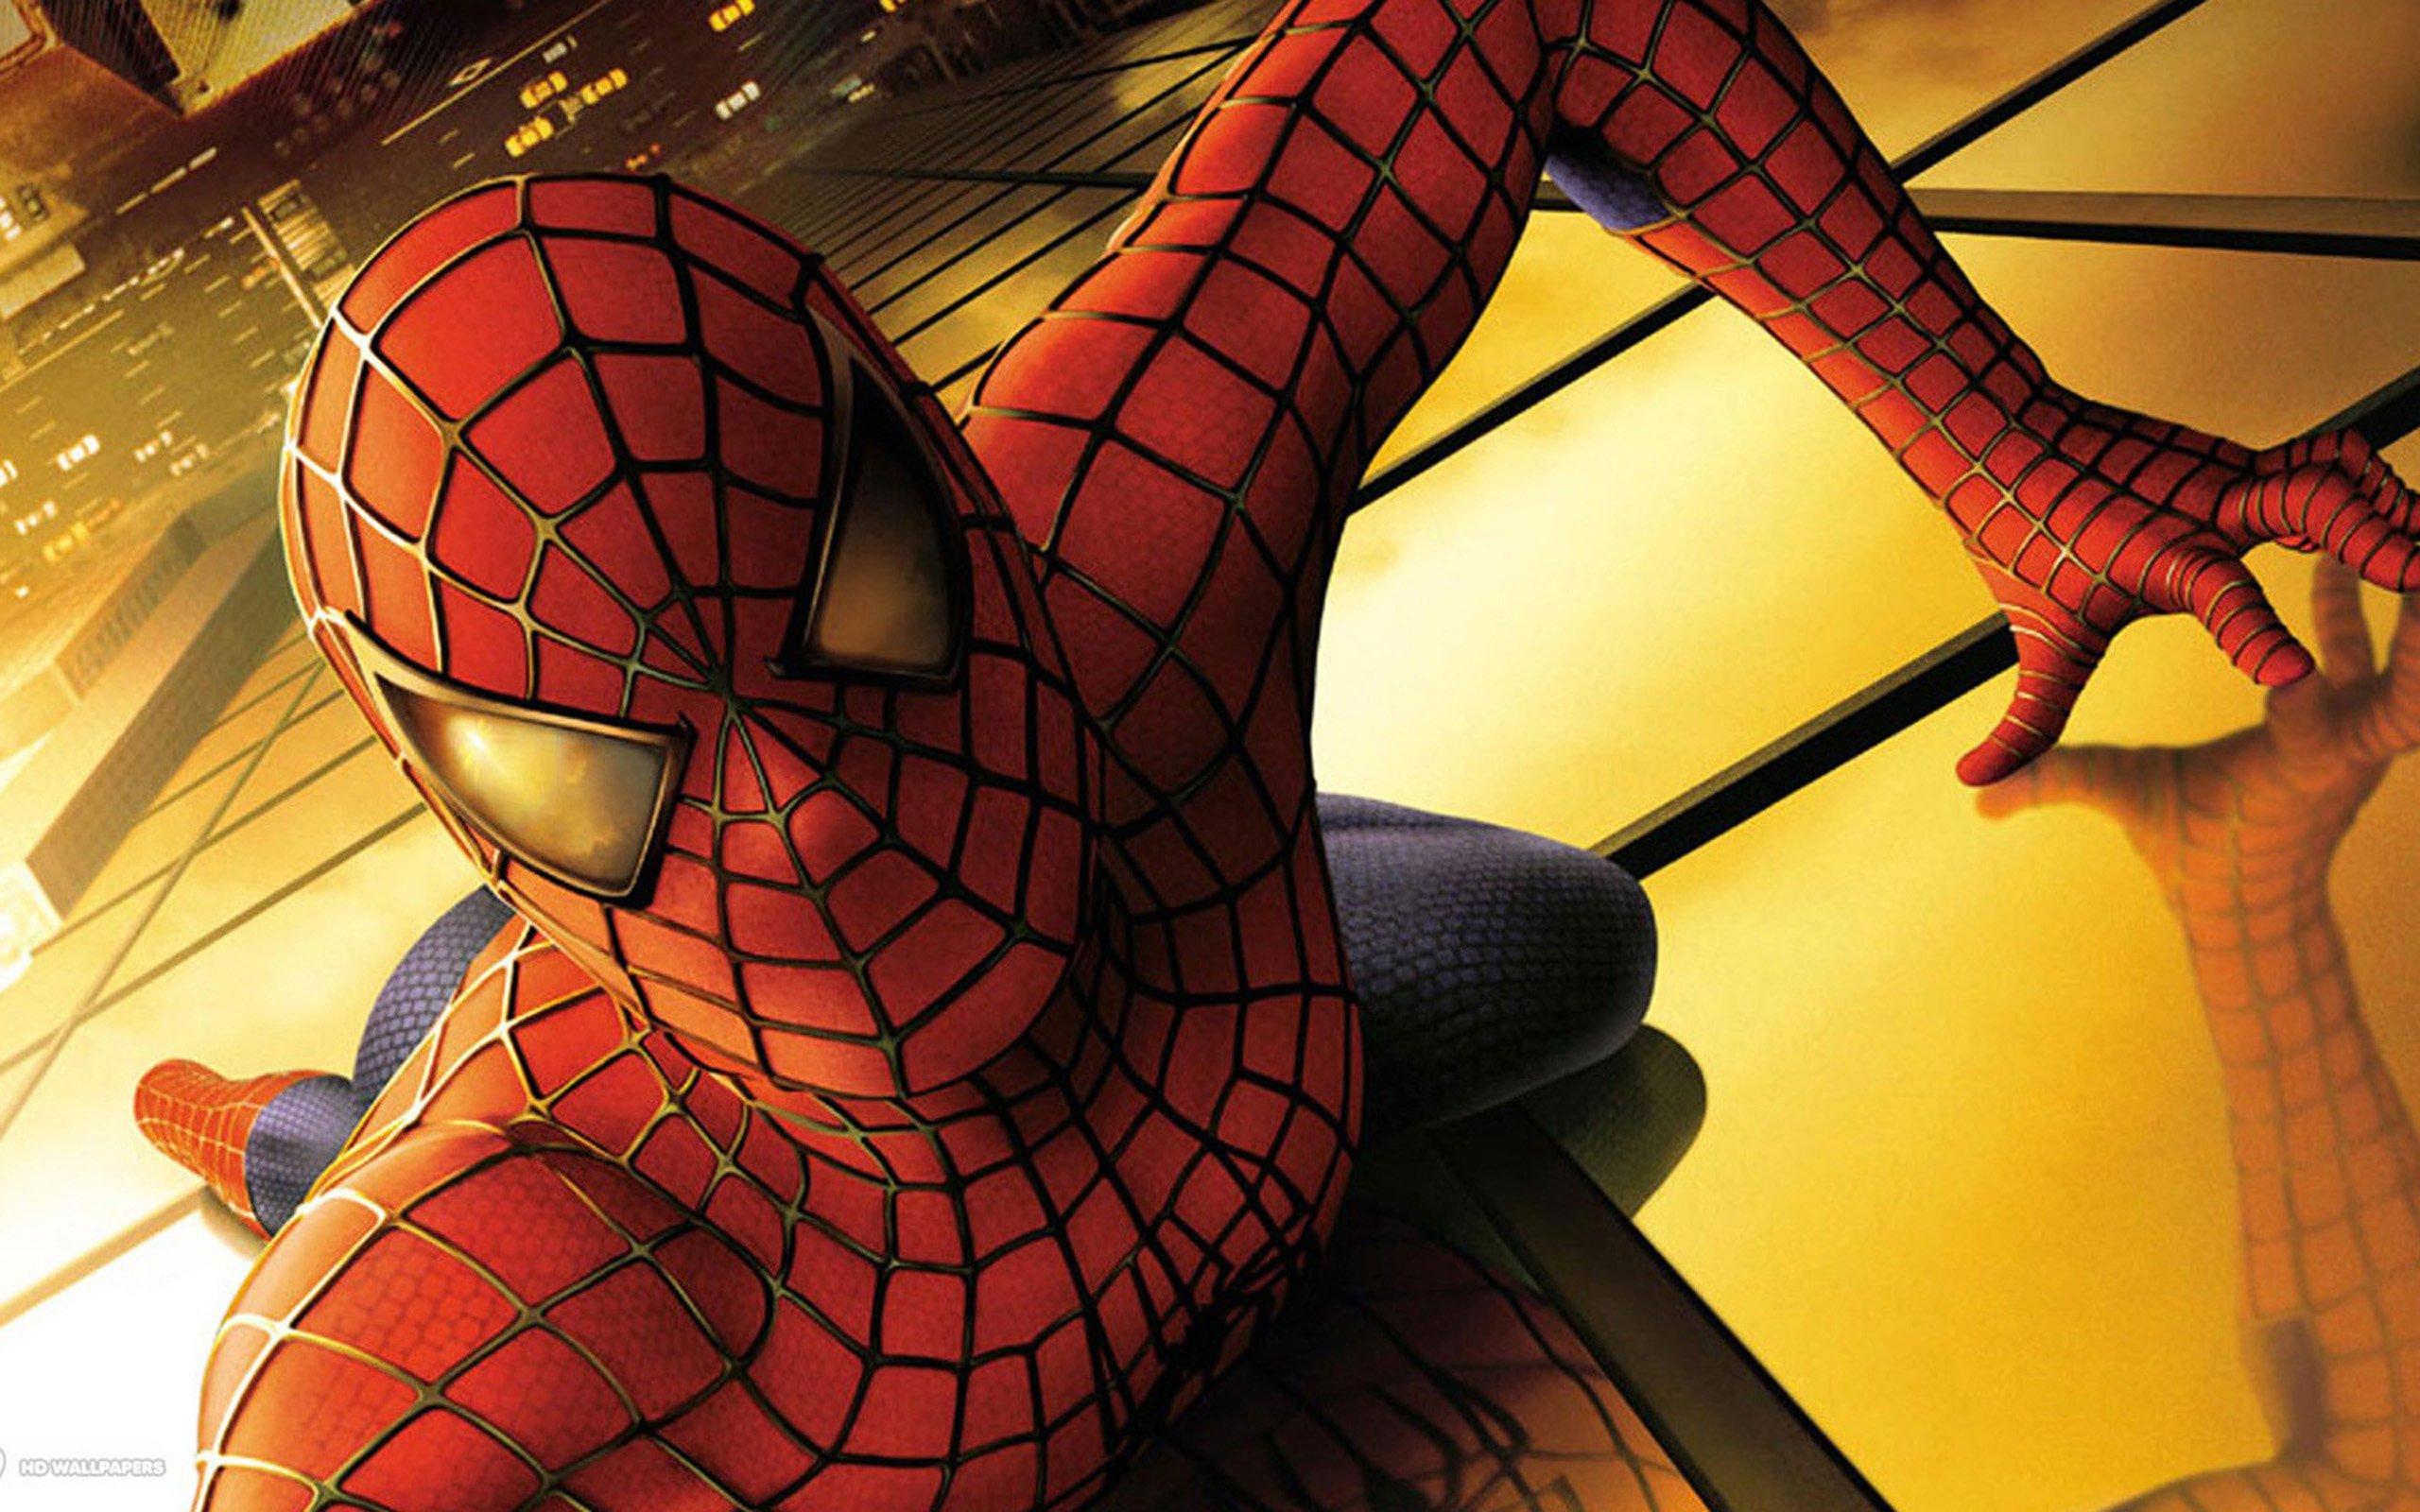 2560 x 1600 · jpeg - spider man, Superhero, Marvel, Spider, Man, Action, Spiderman ...